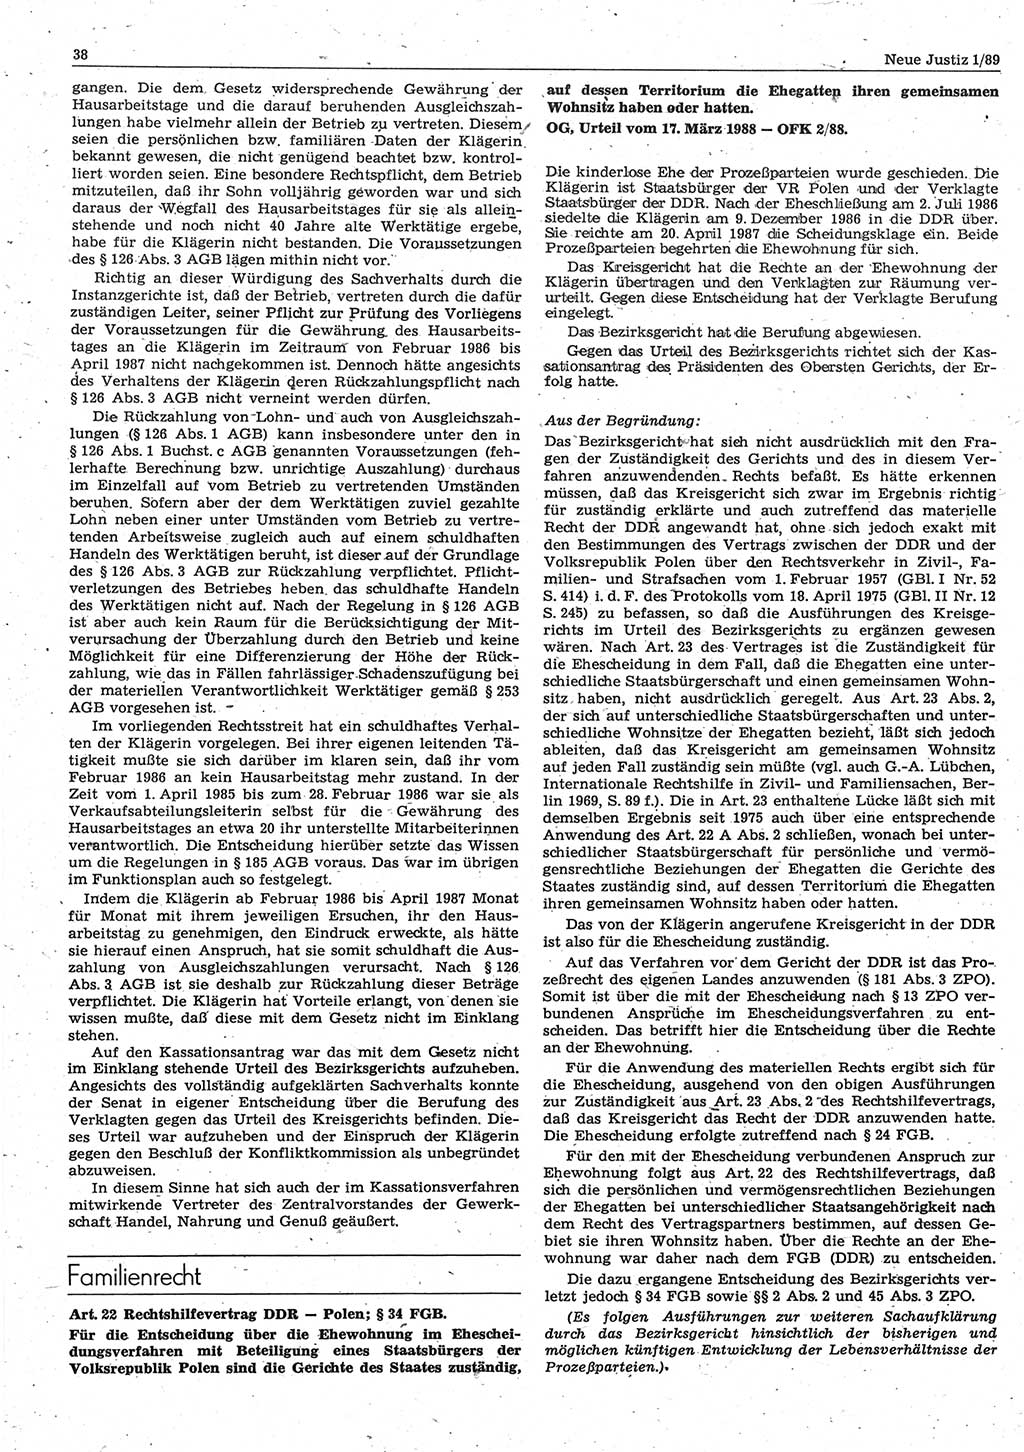 Neue Justiz (NJ), Zeitschrift für sozialistisches Recht und Gesetzlichkeit [Deutsche Demokratische Republik (DDR)], 43. Jahrgang 1989, Seite 38 (NJ DDR 1989, S. 38)